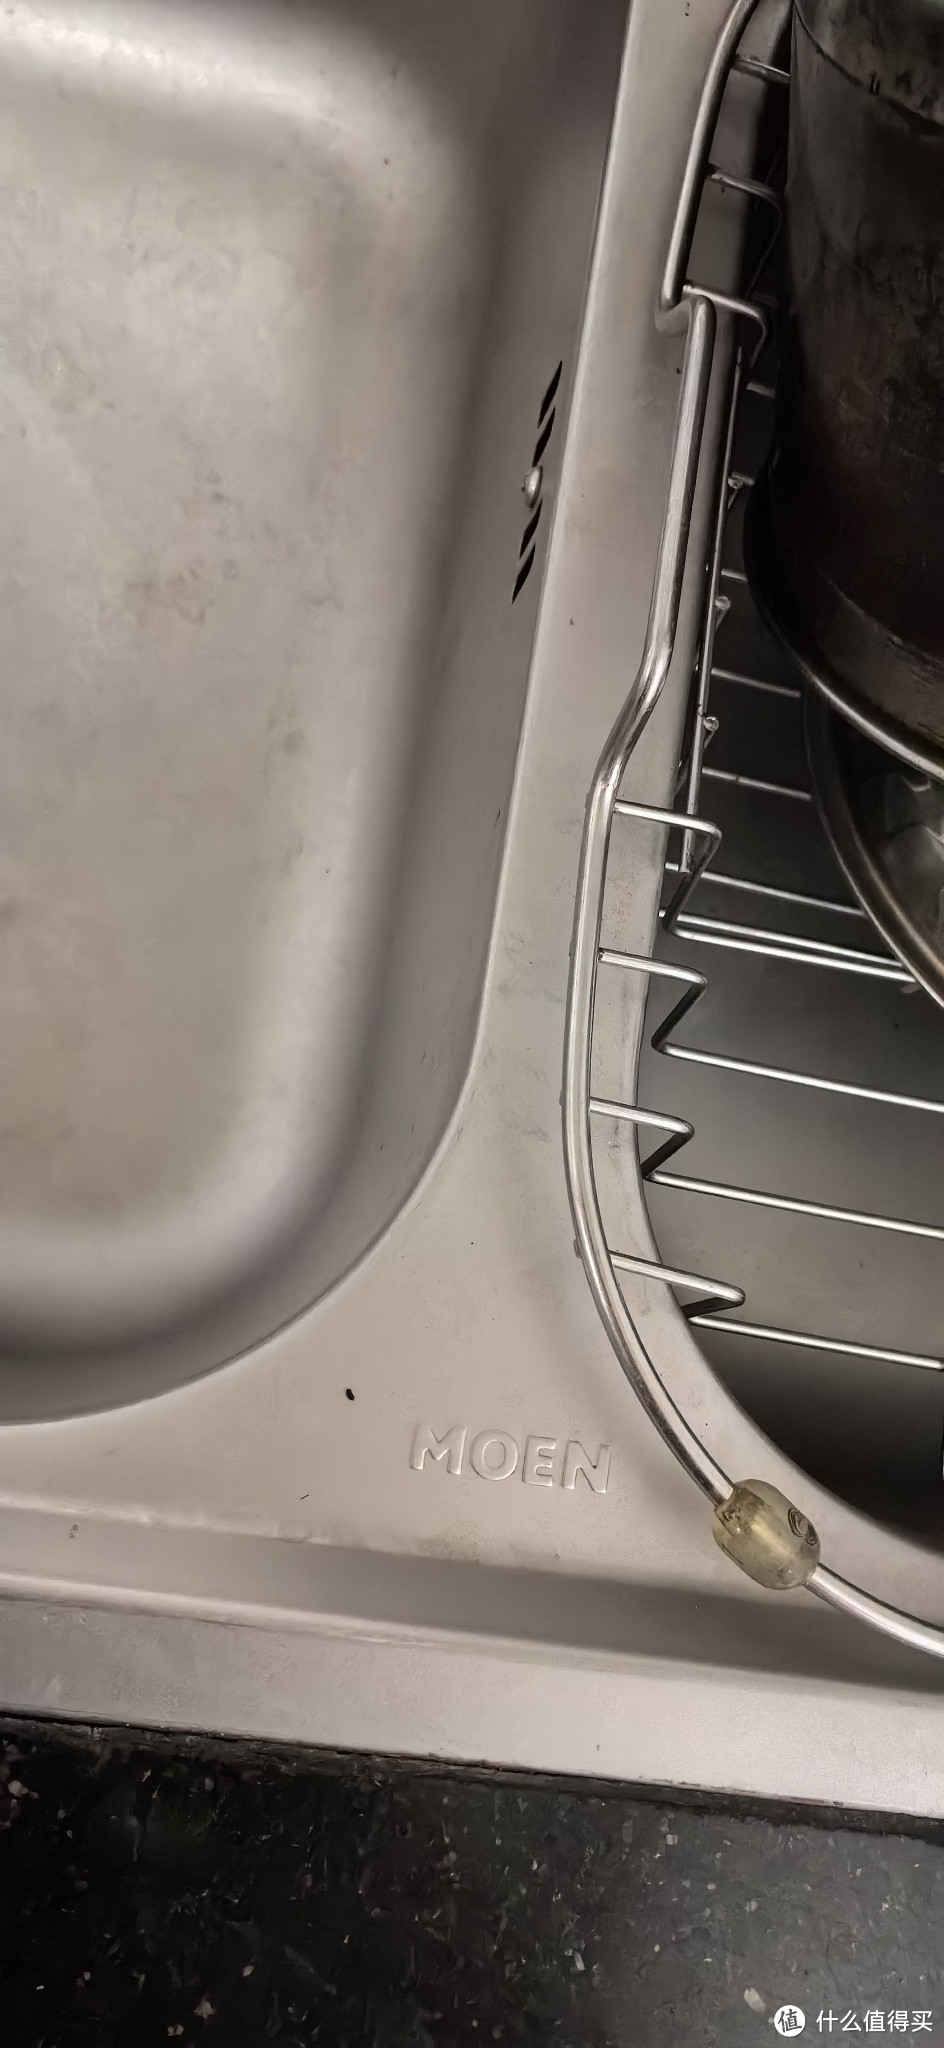 这个摩恩的洗菜盆太好用了。